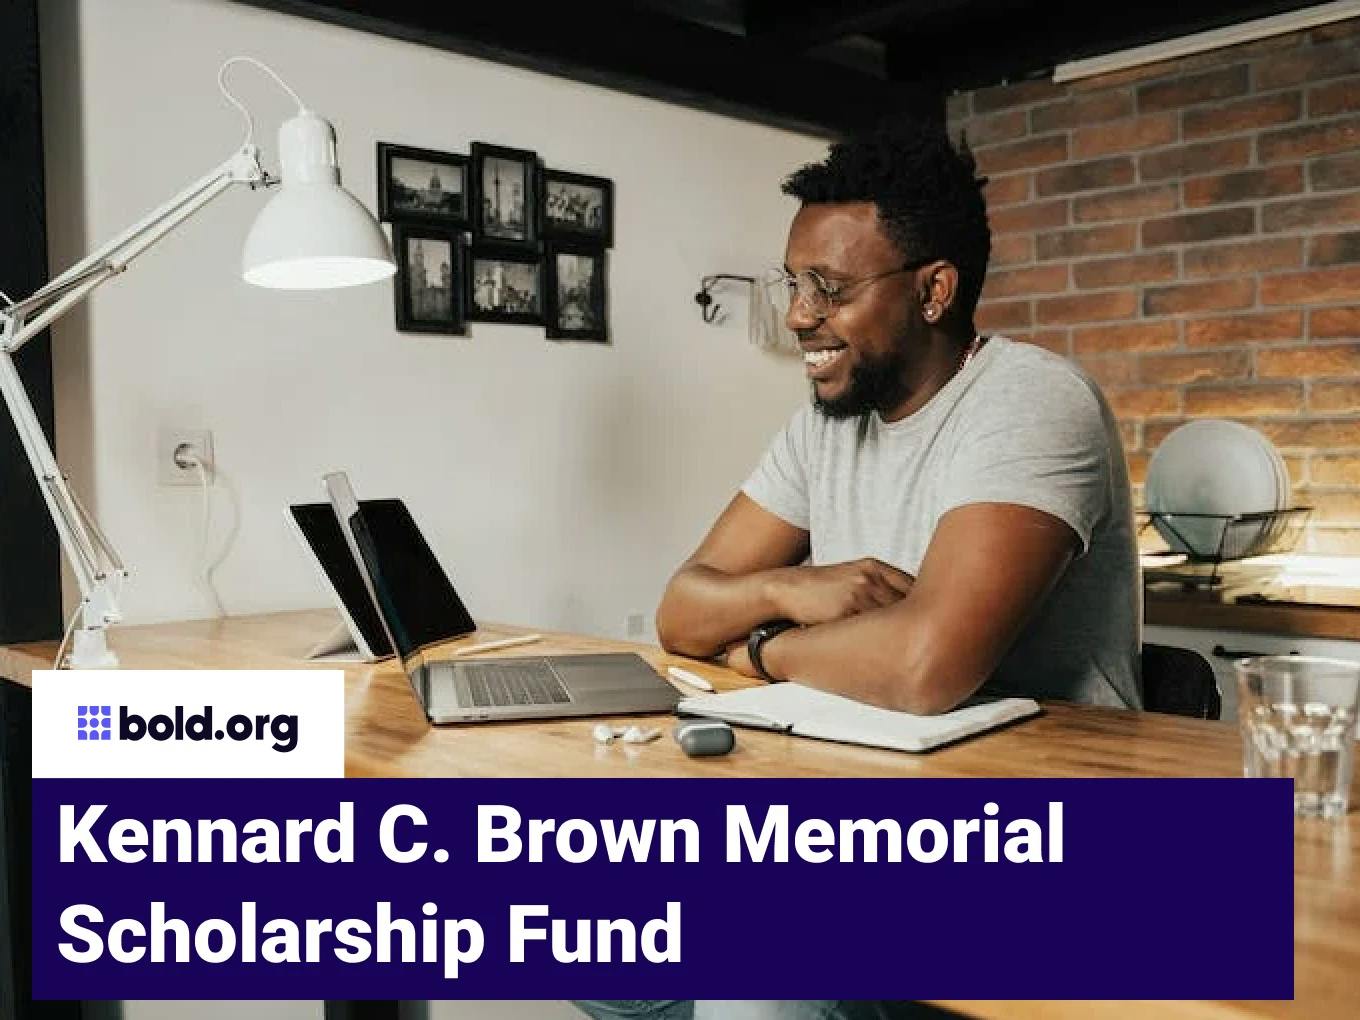 Kennard C. Brown Memorial Scholarship Fund